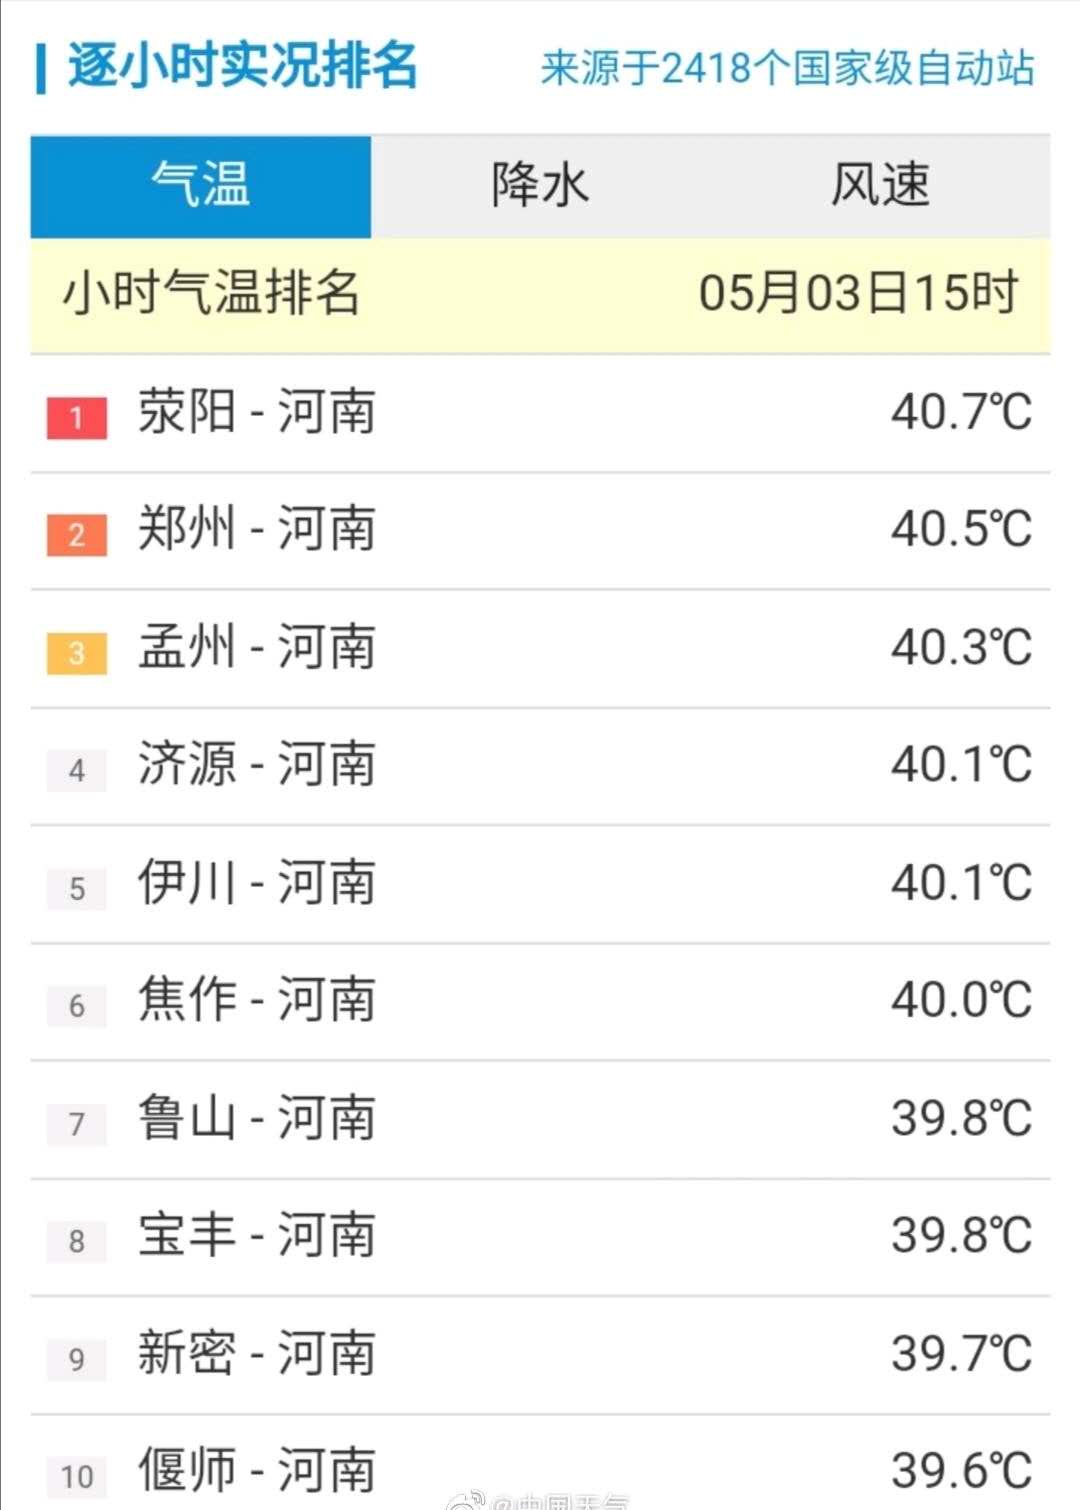 郑州市未来七天天气预报如下——5月4日(星期一):多云转阵雨,雷阵雨